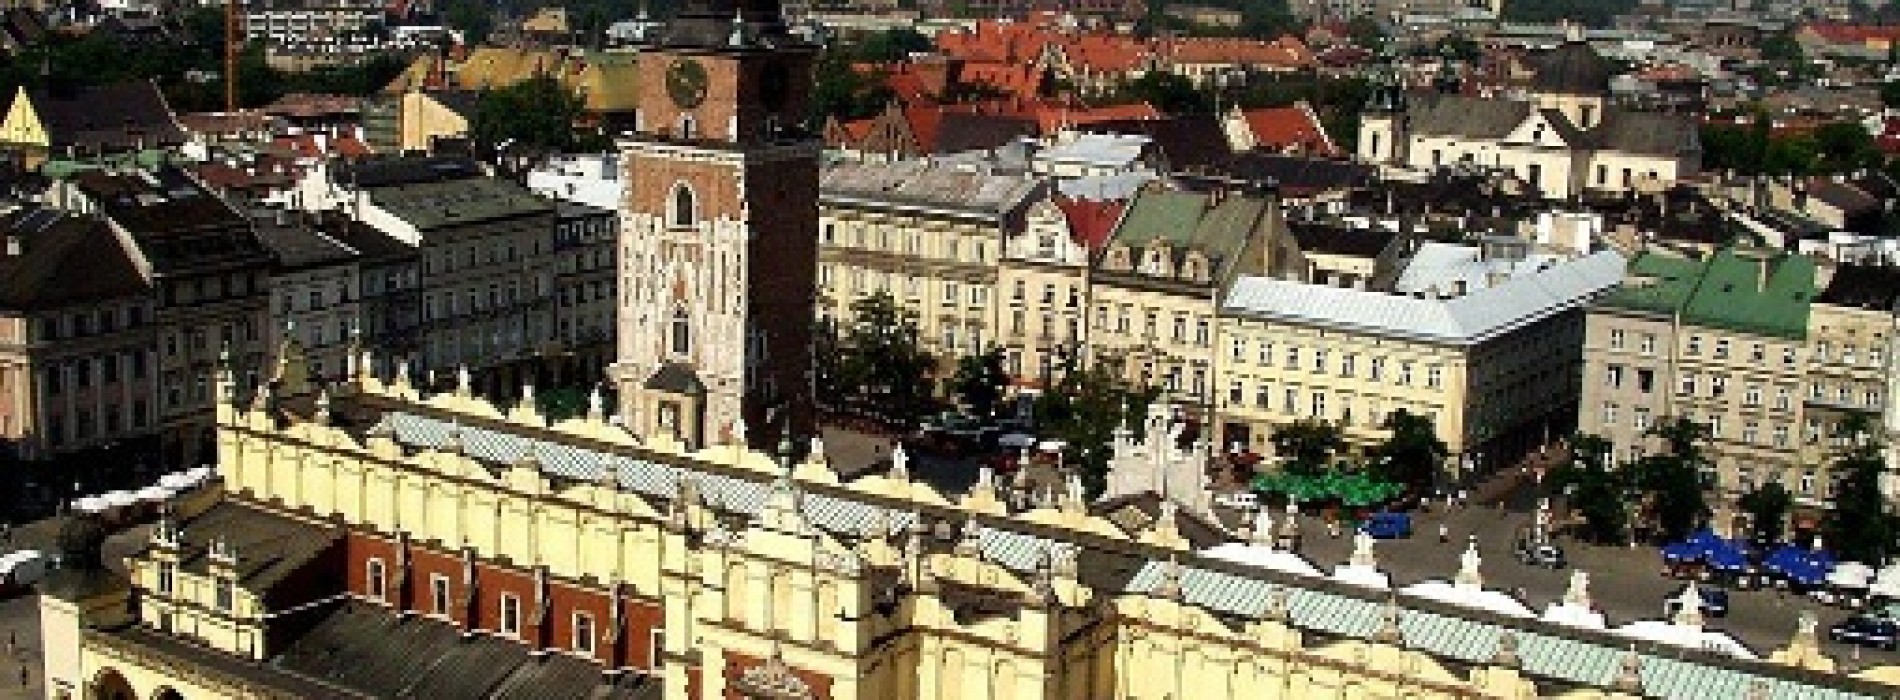 W Krakowie opłaca się zakup mieszkania pod wynajem